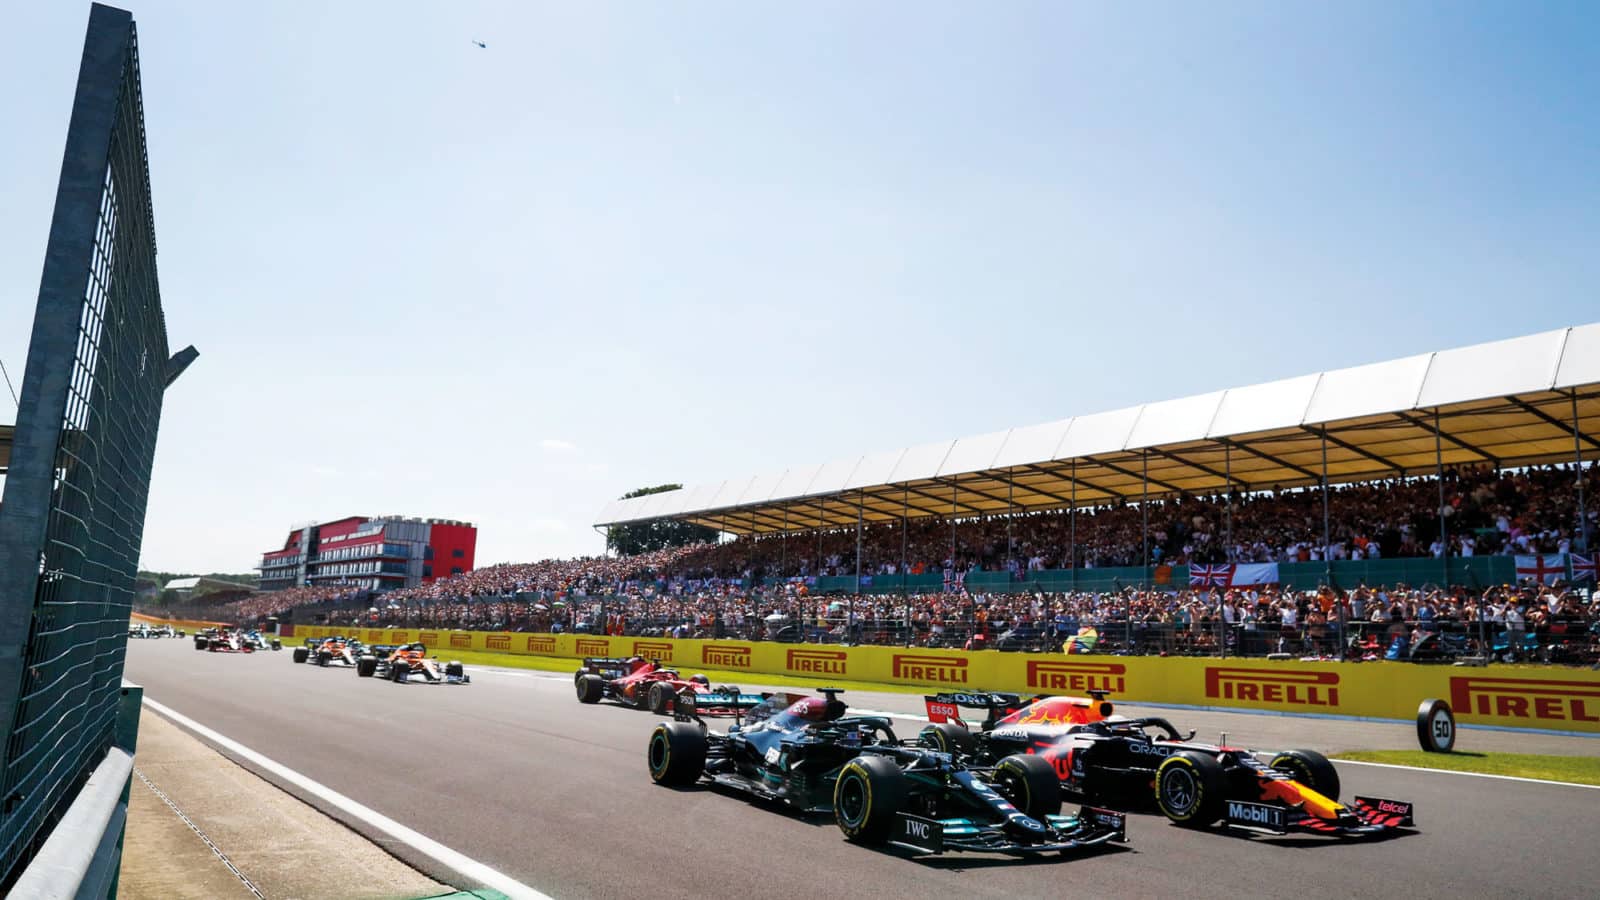 Start of the 2021 British Grand Prix